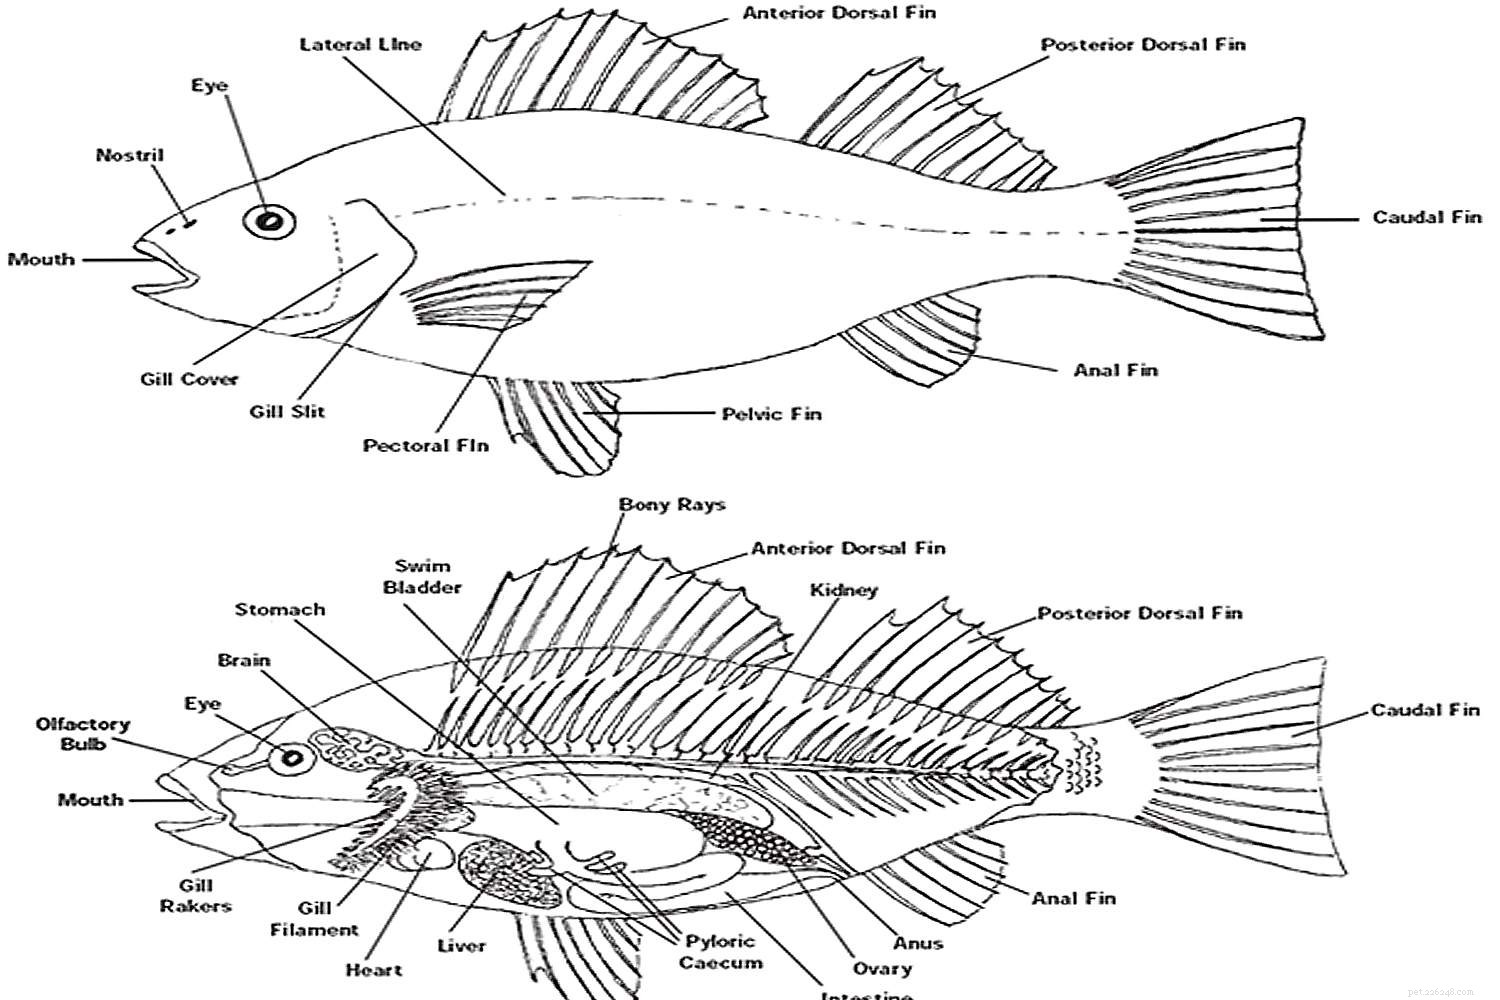 De anatomie van vissen